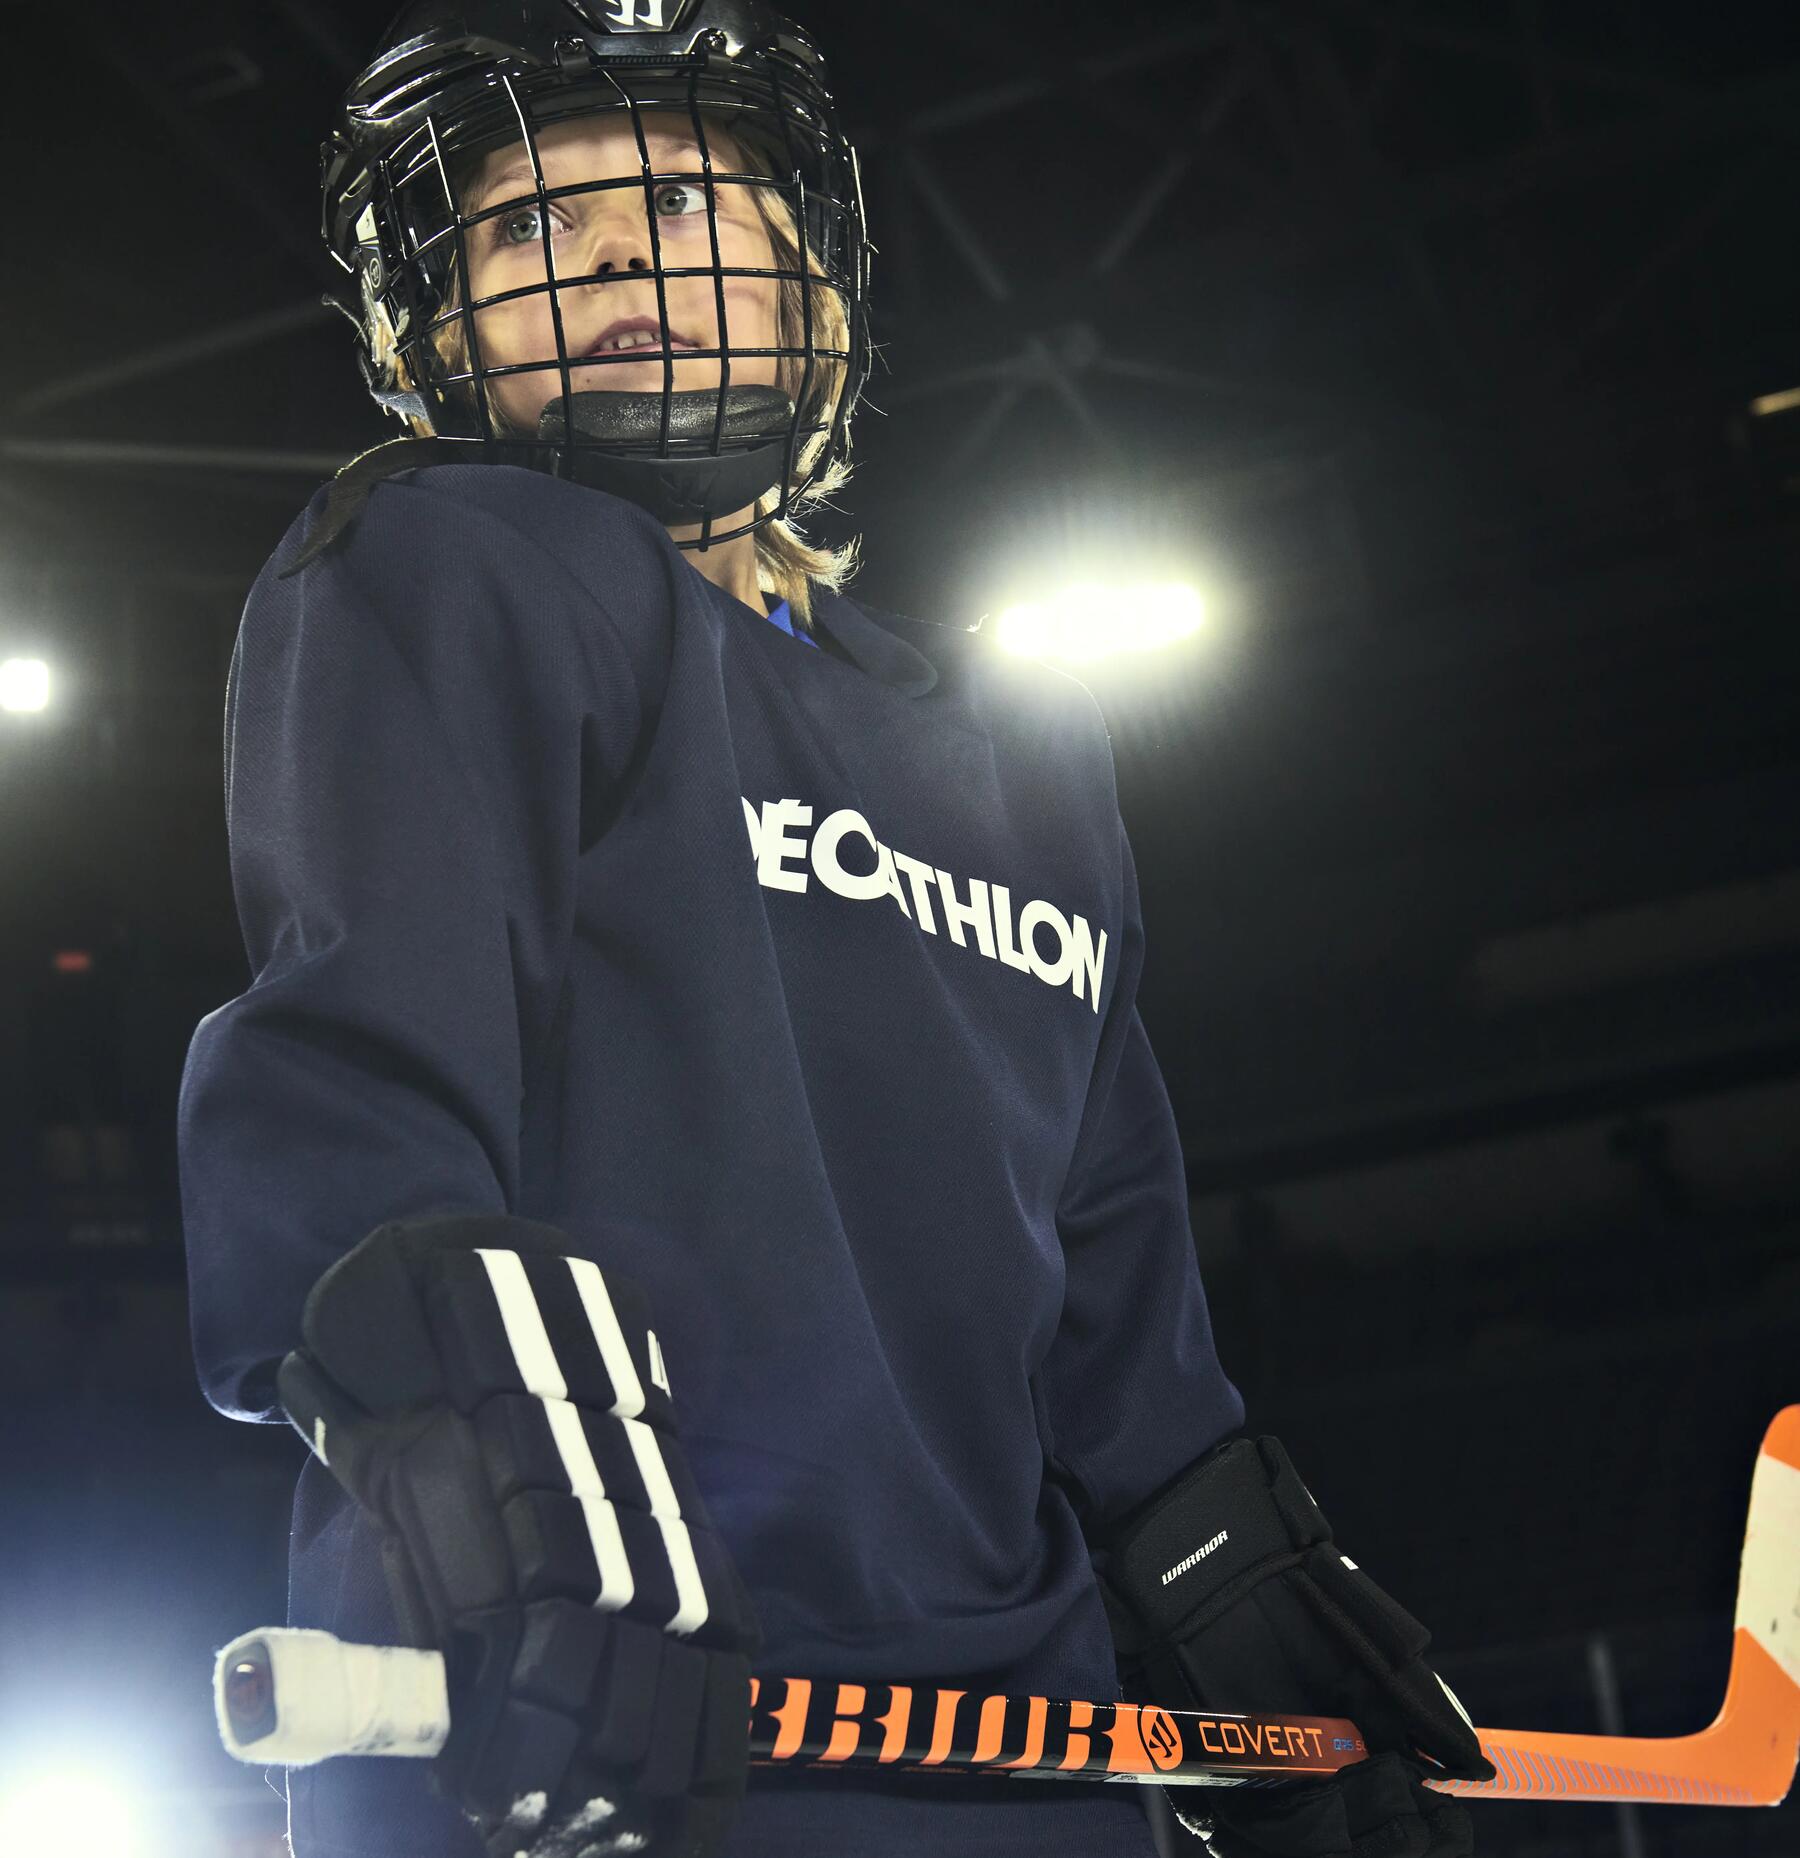 chłopiec stojący na lodowisku w kasku i i stroju hokejowym trzymając kij hokejowy w rękach